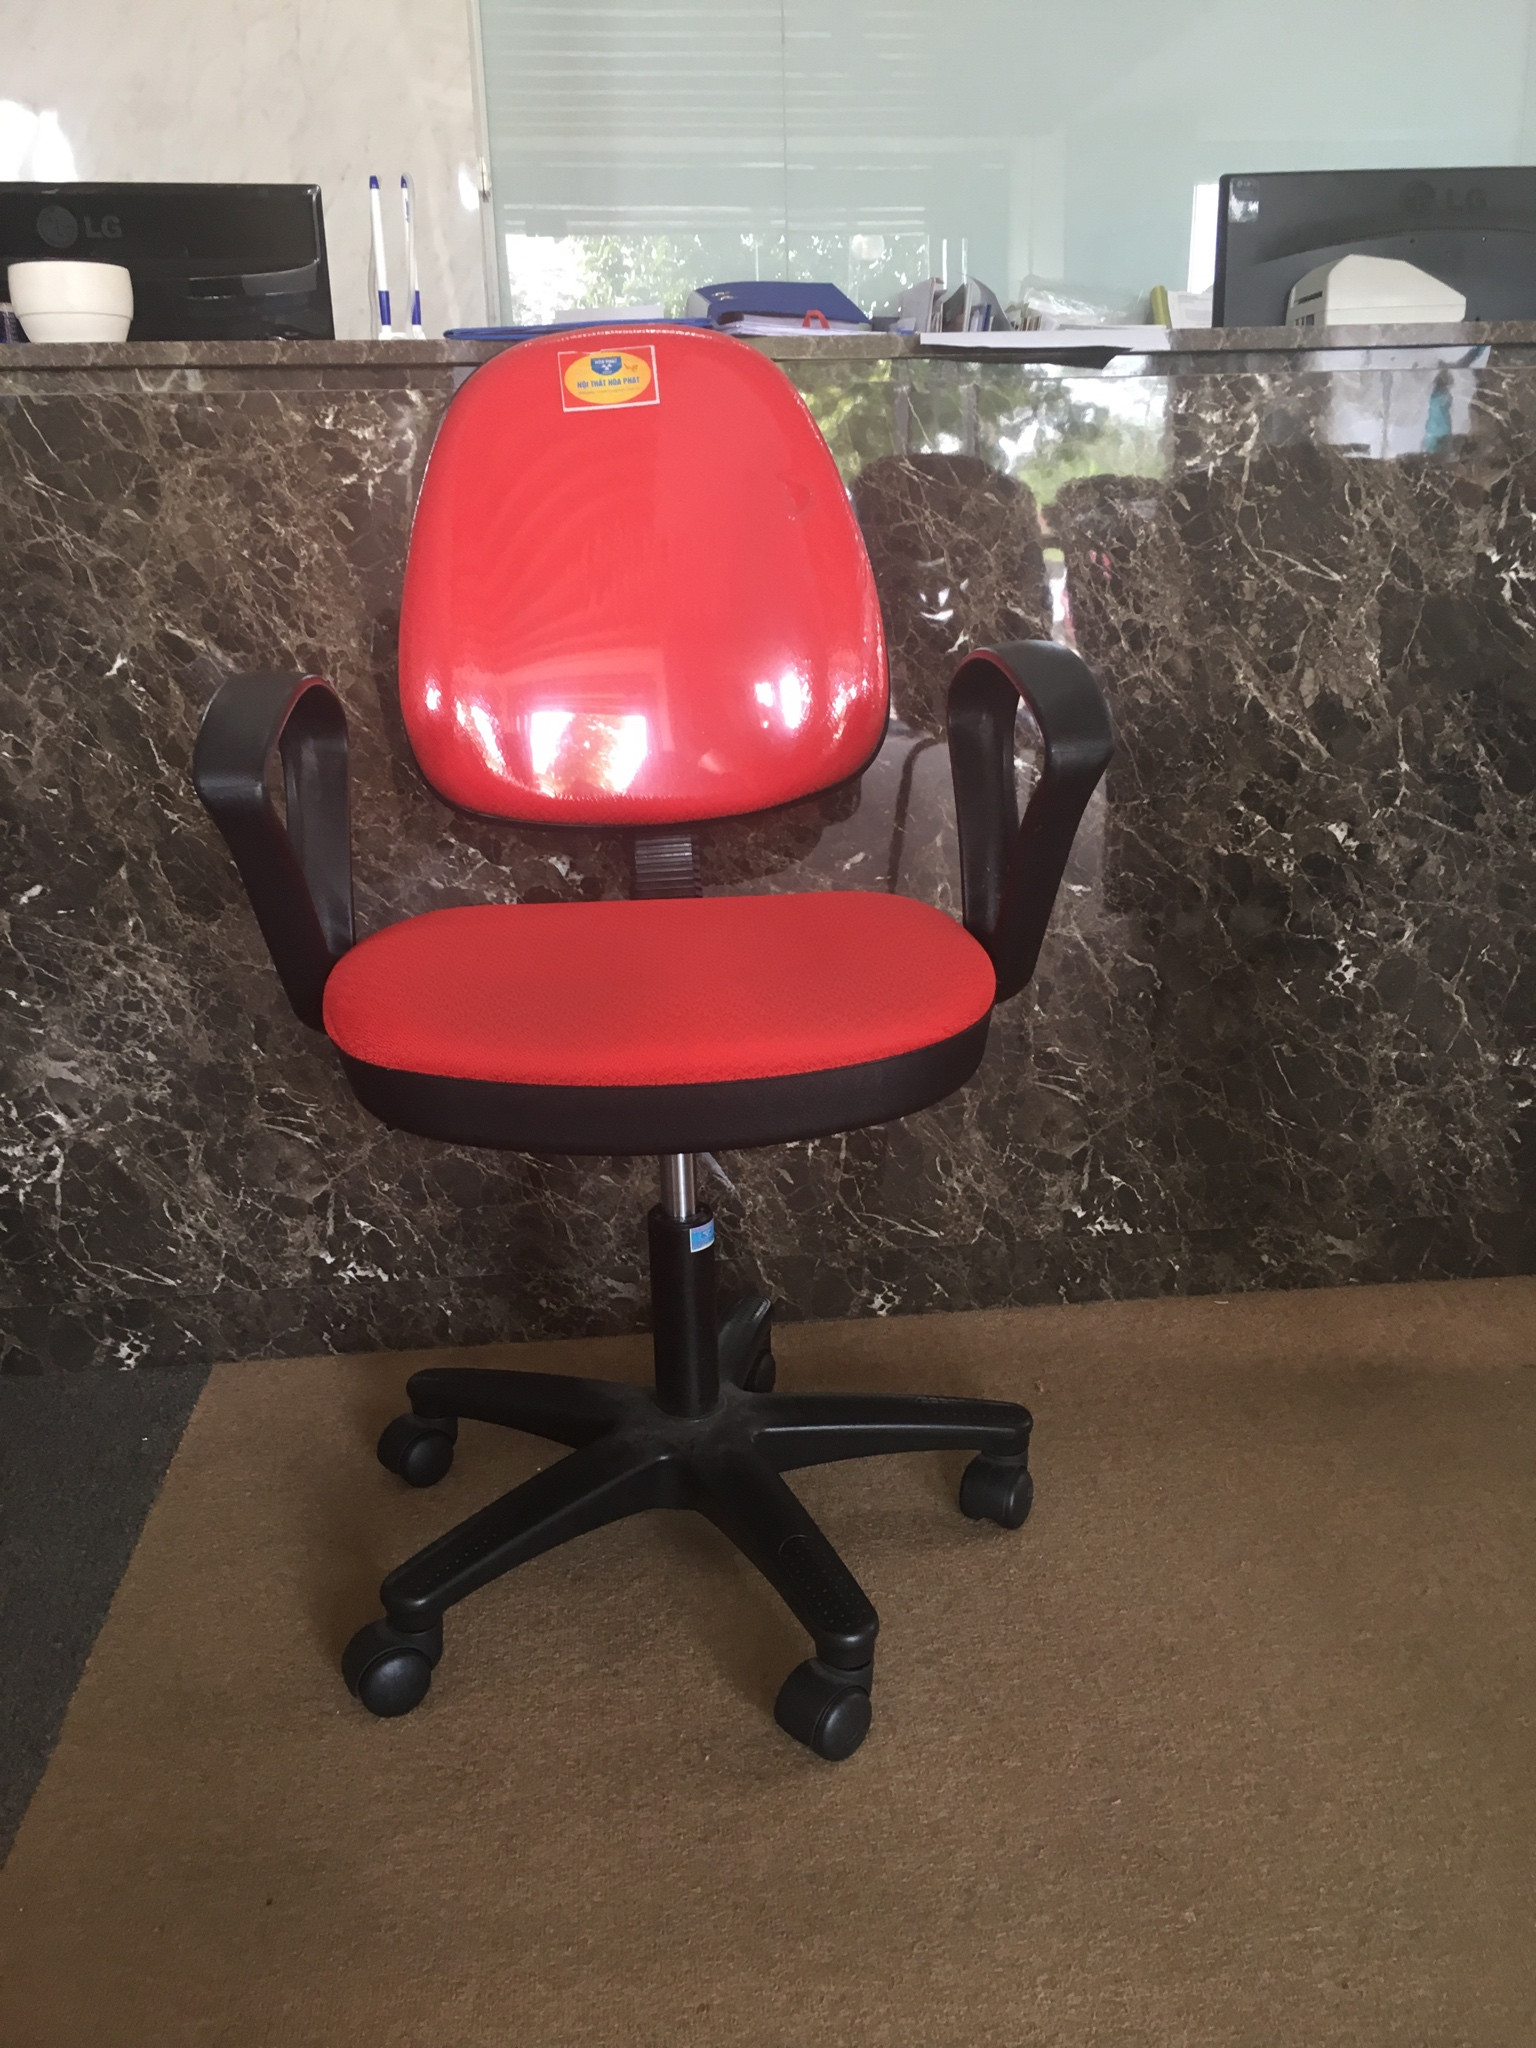 3 mẫu ghế văn phòng Hòa Phát bán chạy nhất